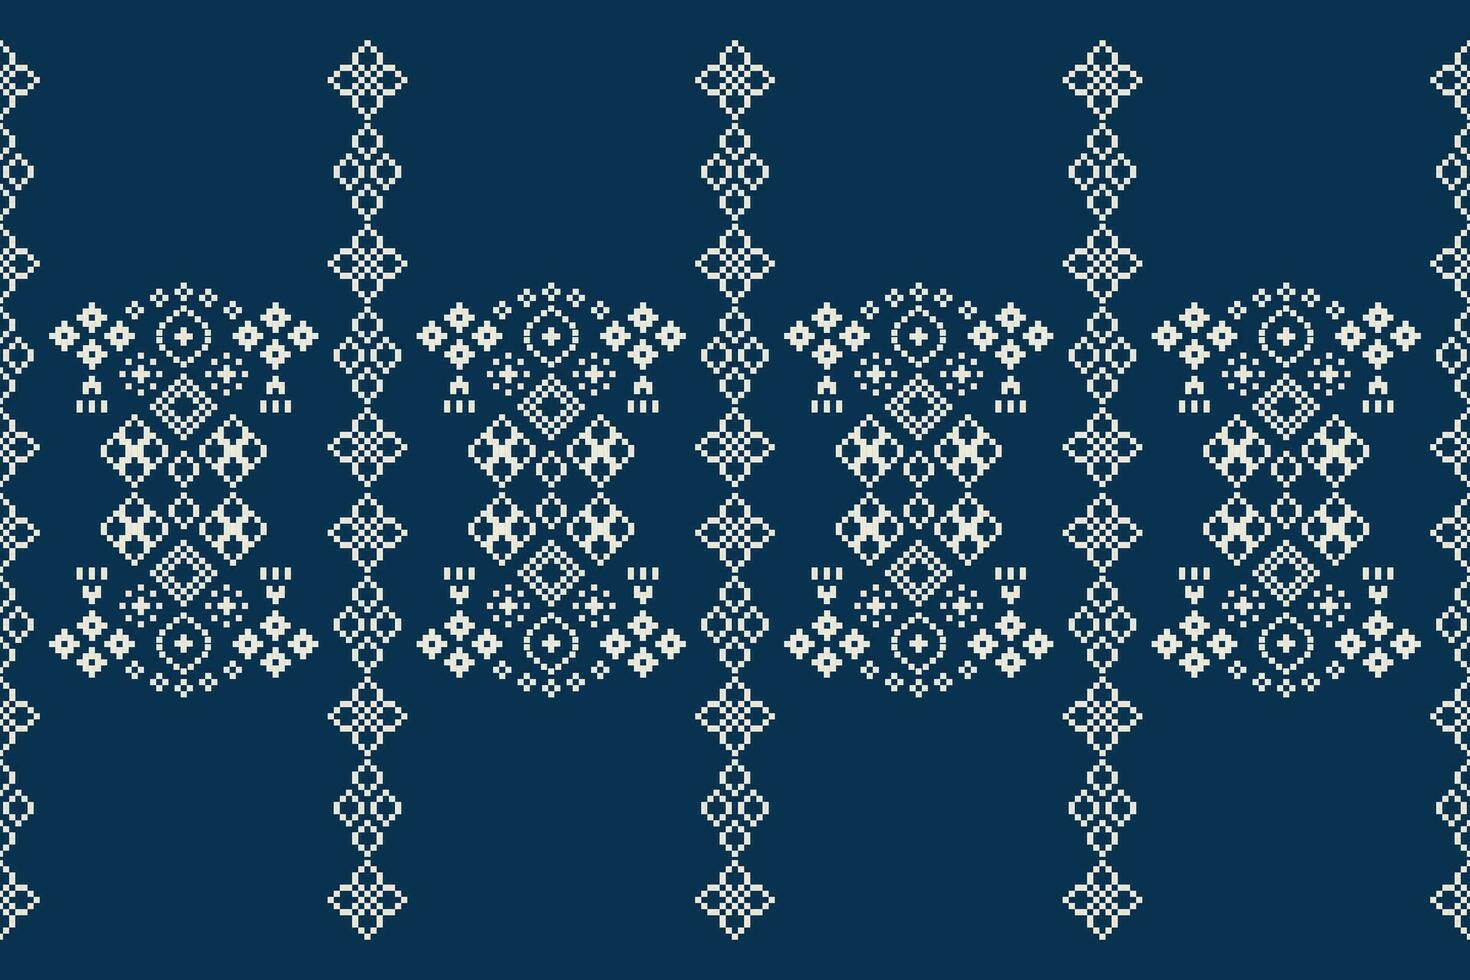 étnico geométrico tecido padronizar Cruz ponto.ikat bordado étnico oriental pixel padronizar azul fundo. resumo,vetor,ilustração. textura,vestuário,quadro,decoração,motivos,seda papel de parede. vetor